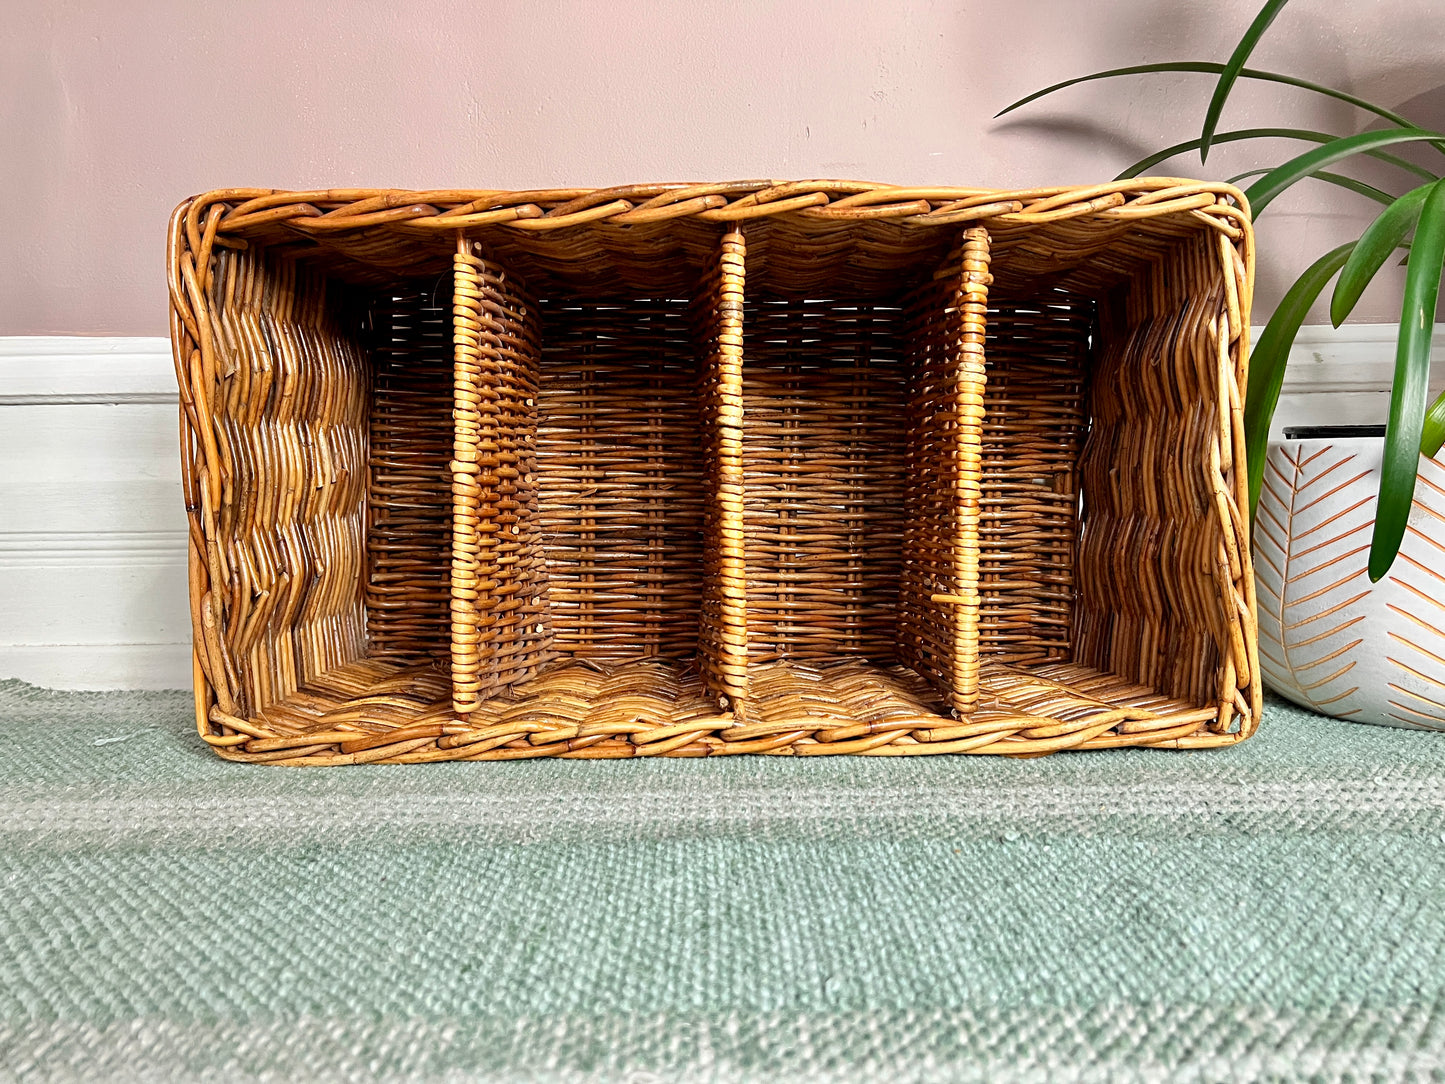 The Wilma Wicker Shelf Basket